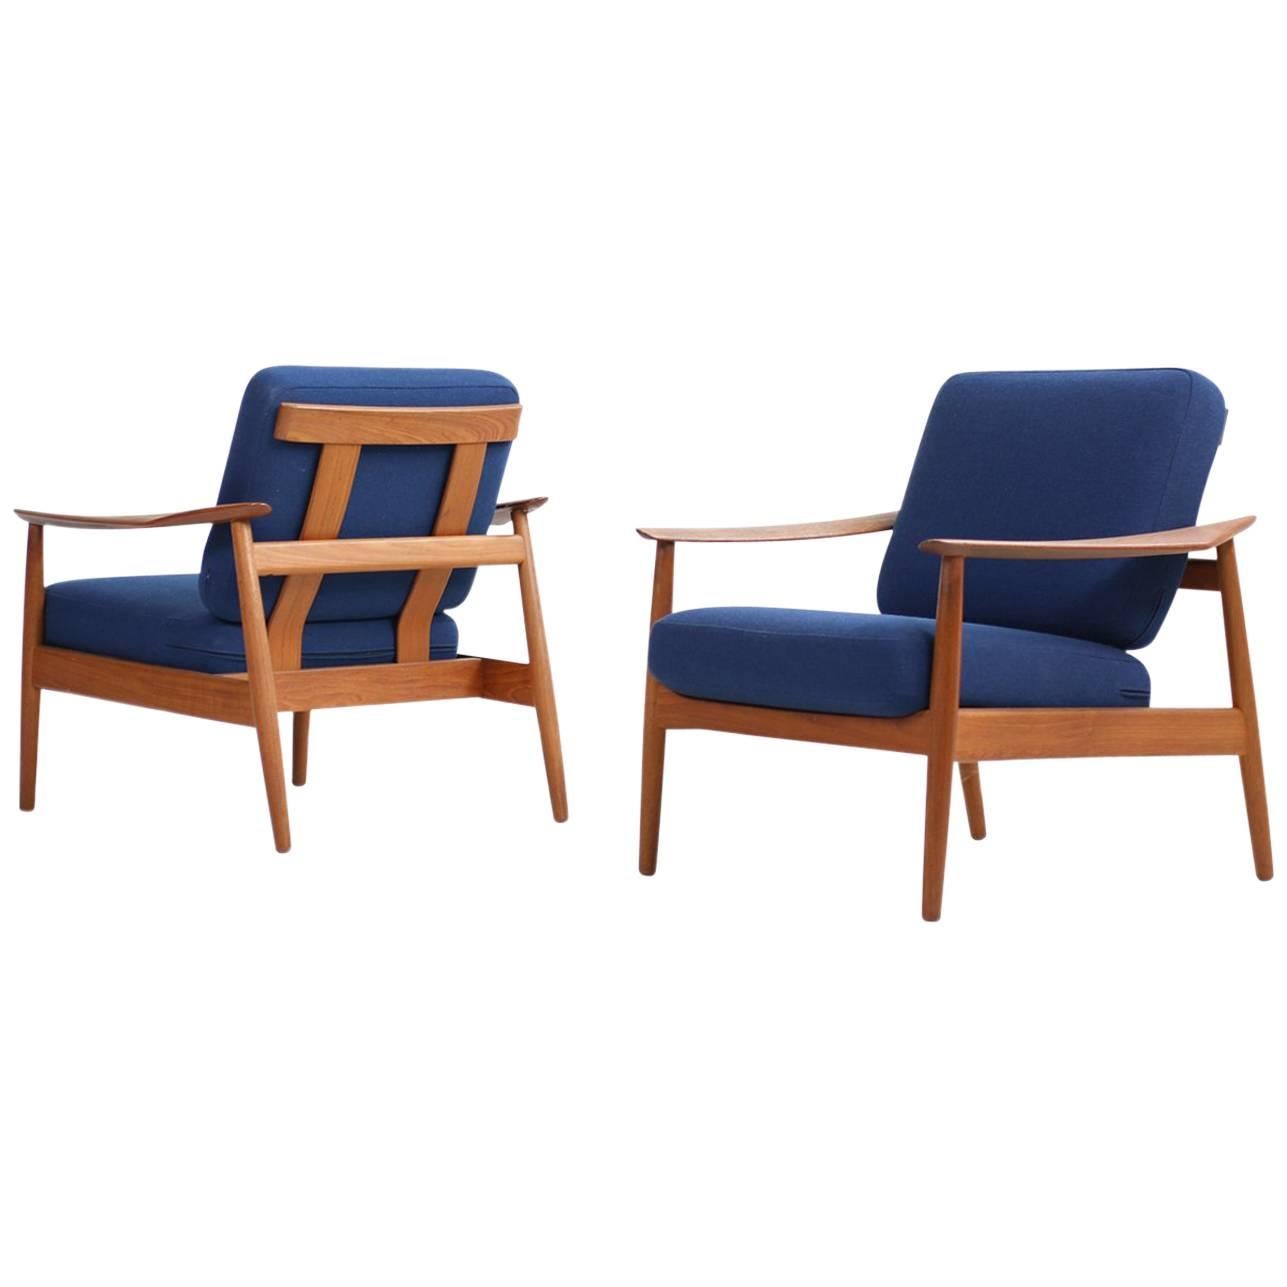 Rare Arne Vodder 1960s Teak Easy Chairs Mod. 164 Danish Modern Design For Sale